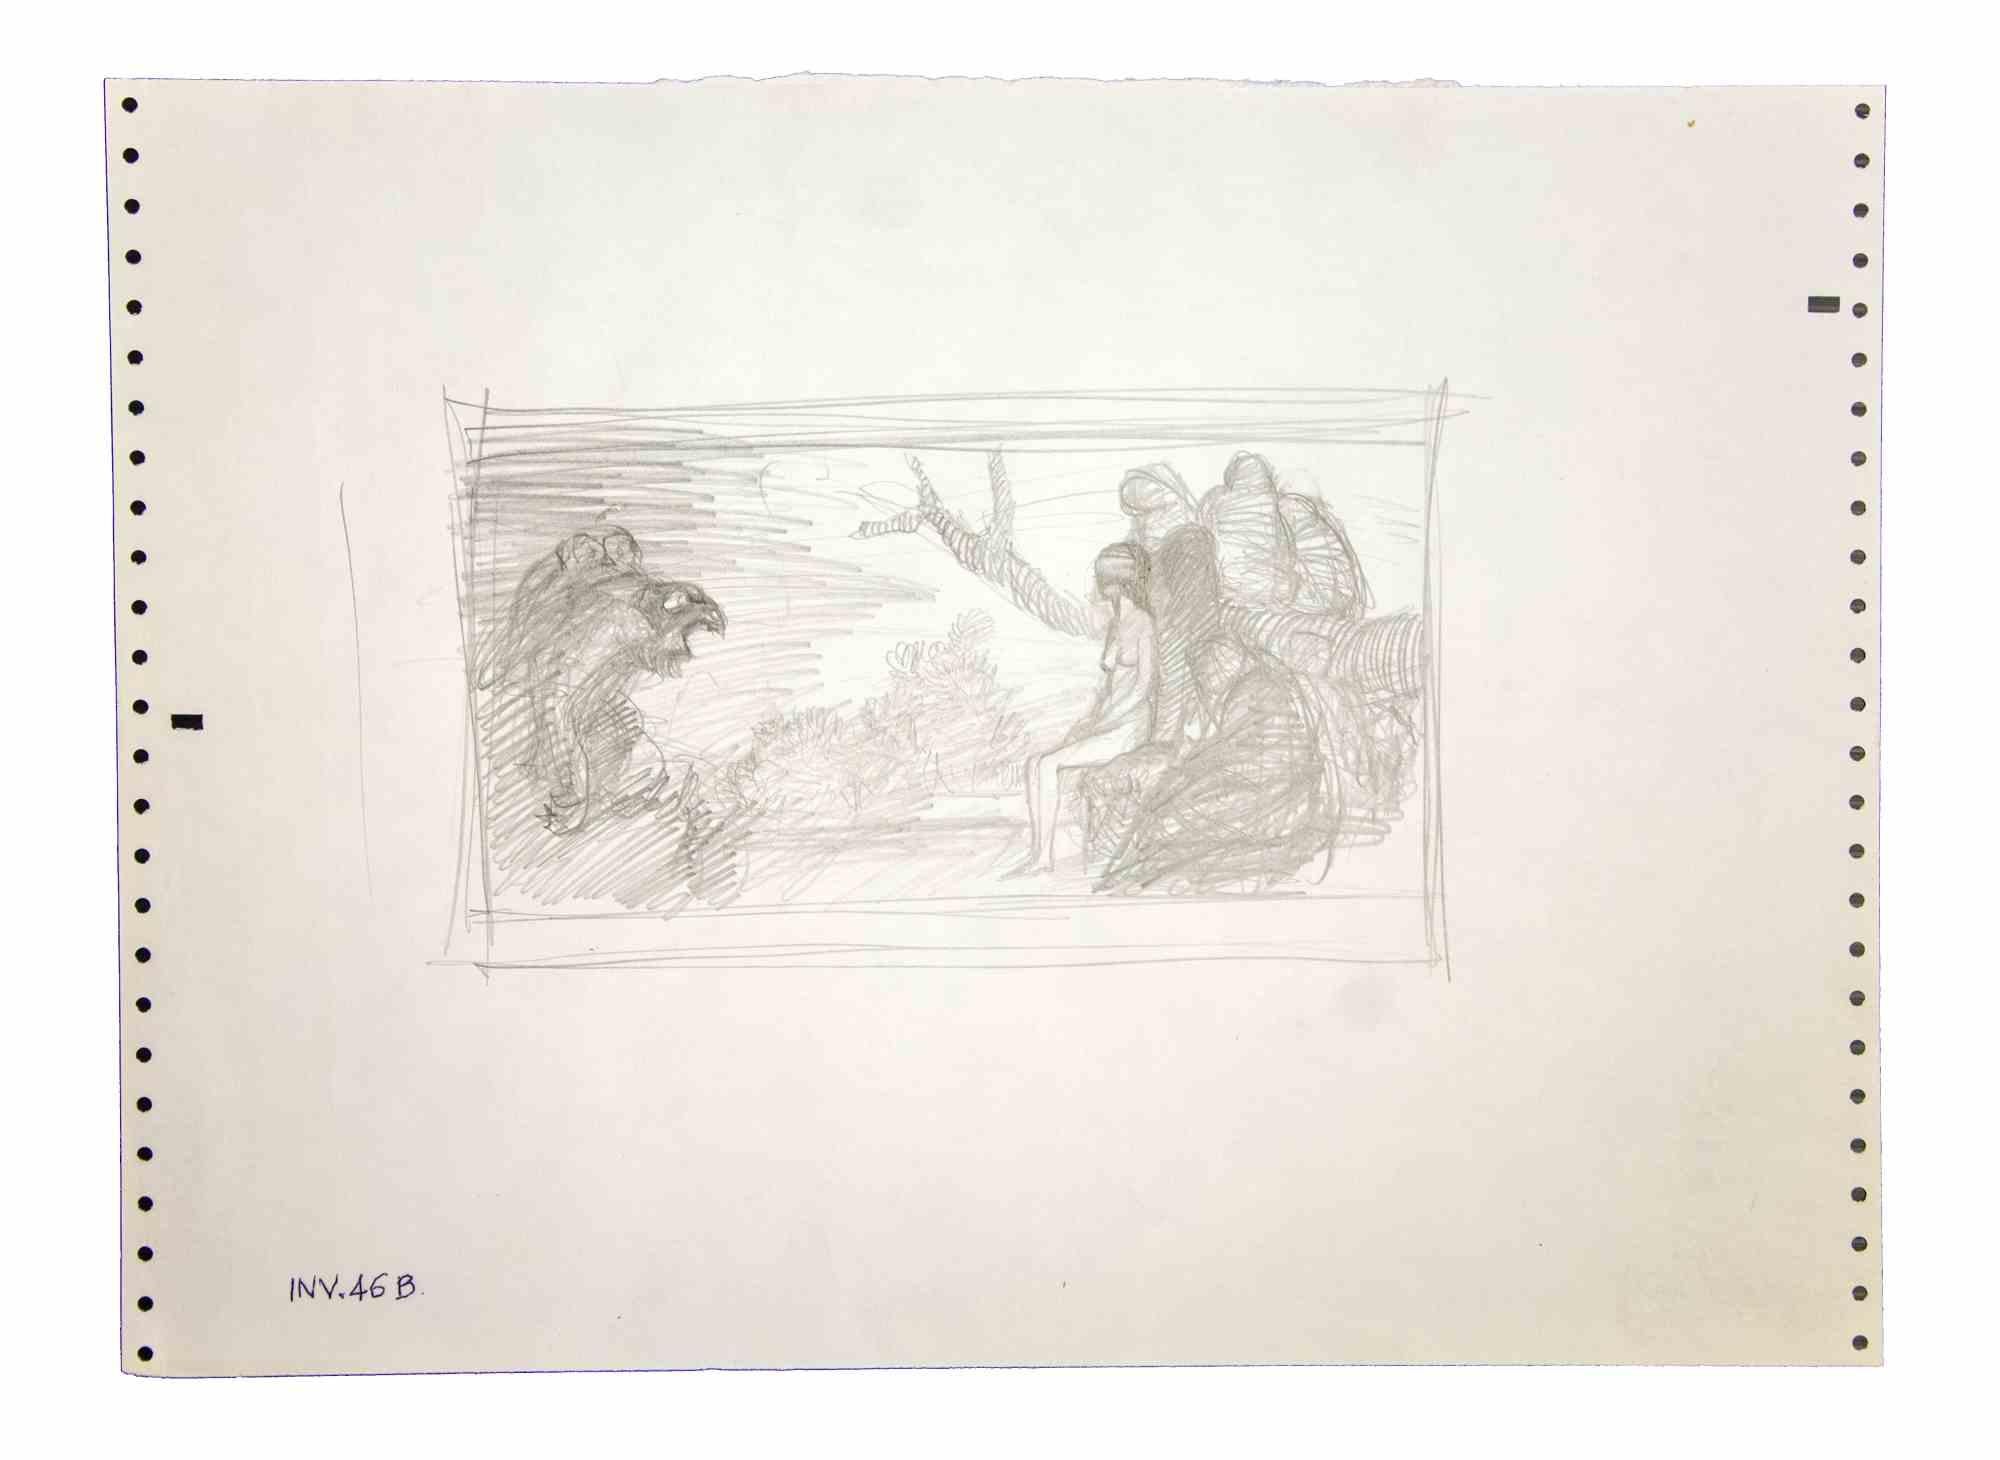 Sybil im Wald ist eine Originalzeichnung mit Bleistift auf Papier, die Leo Guida in den 1970er Jahren anfertigte.

Guter Zustand.

Leo Guida  (1992 - 2017). Mit seinem Gespür für aktuelle Themen, künstlerische Strömungen und historische Techniken